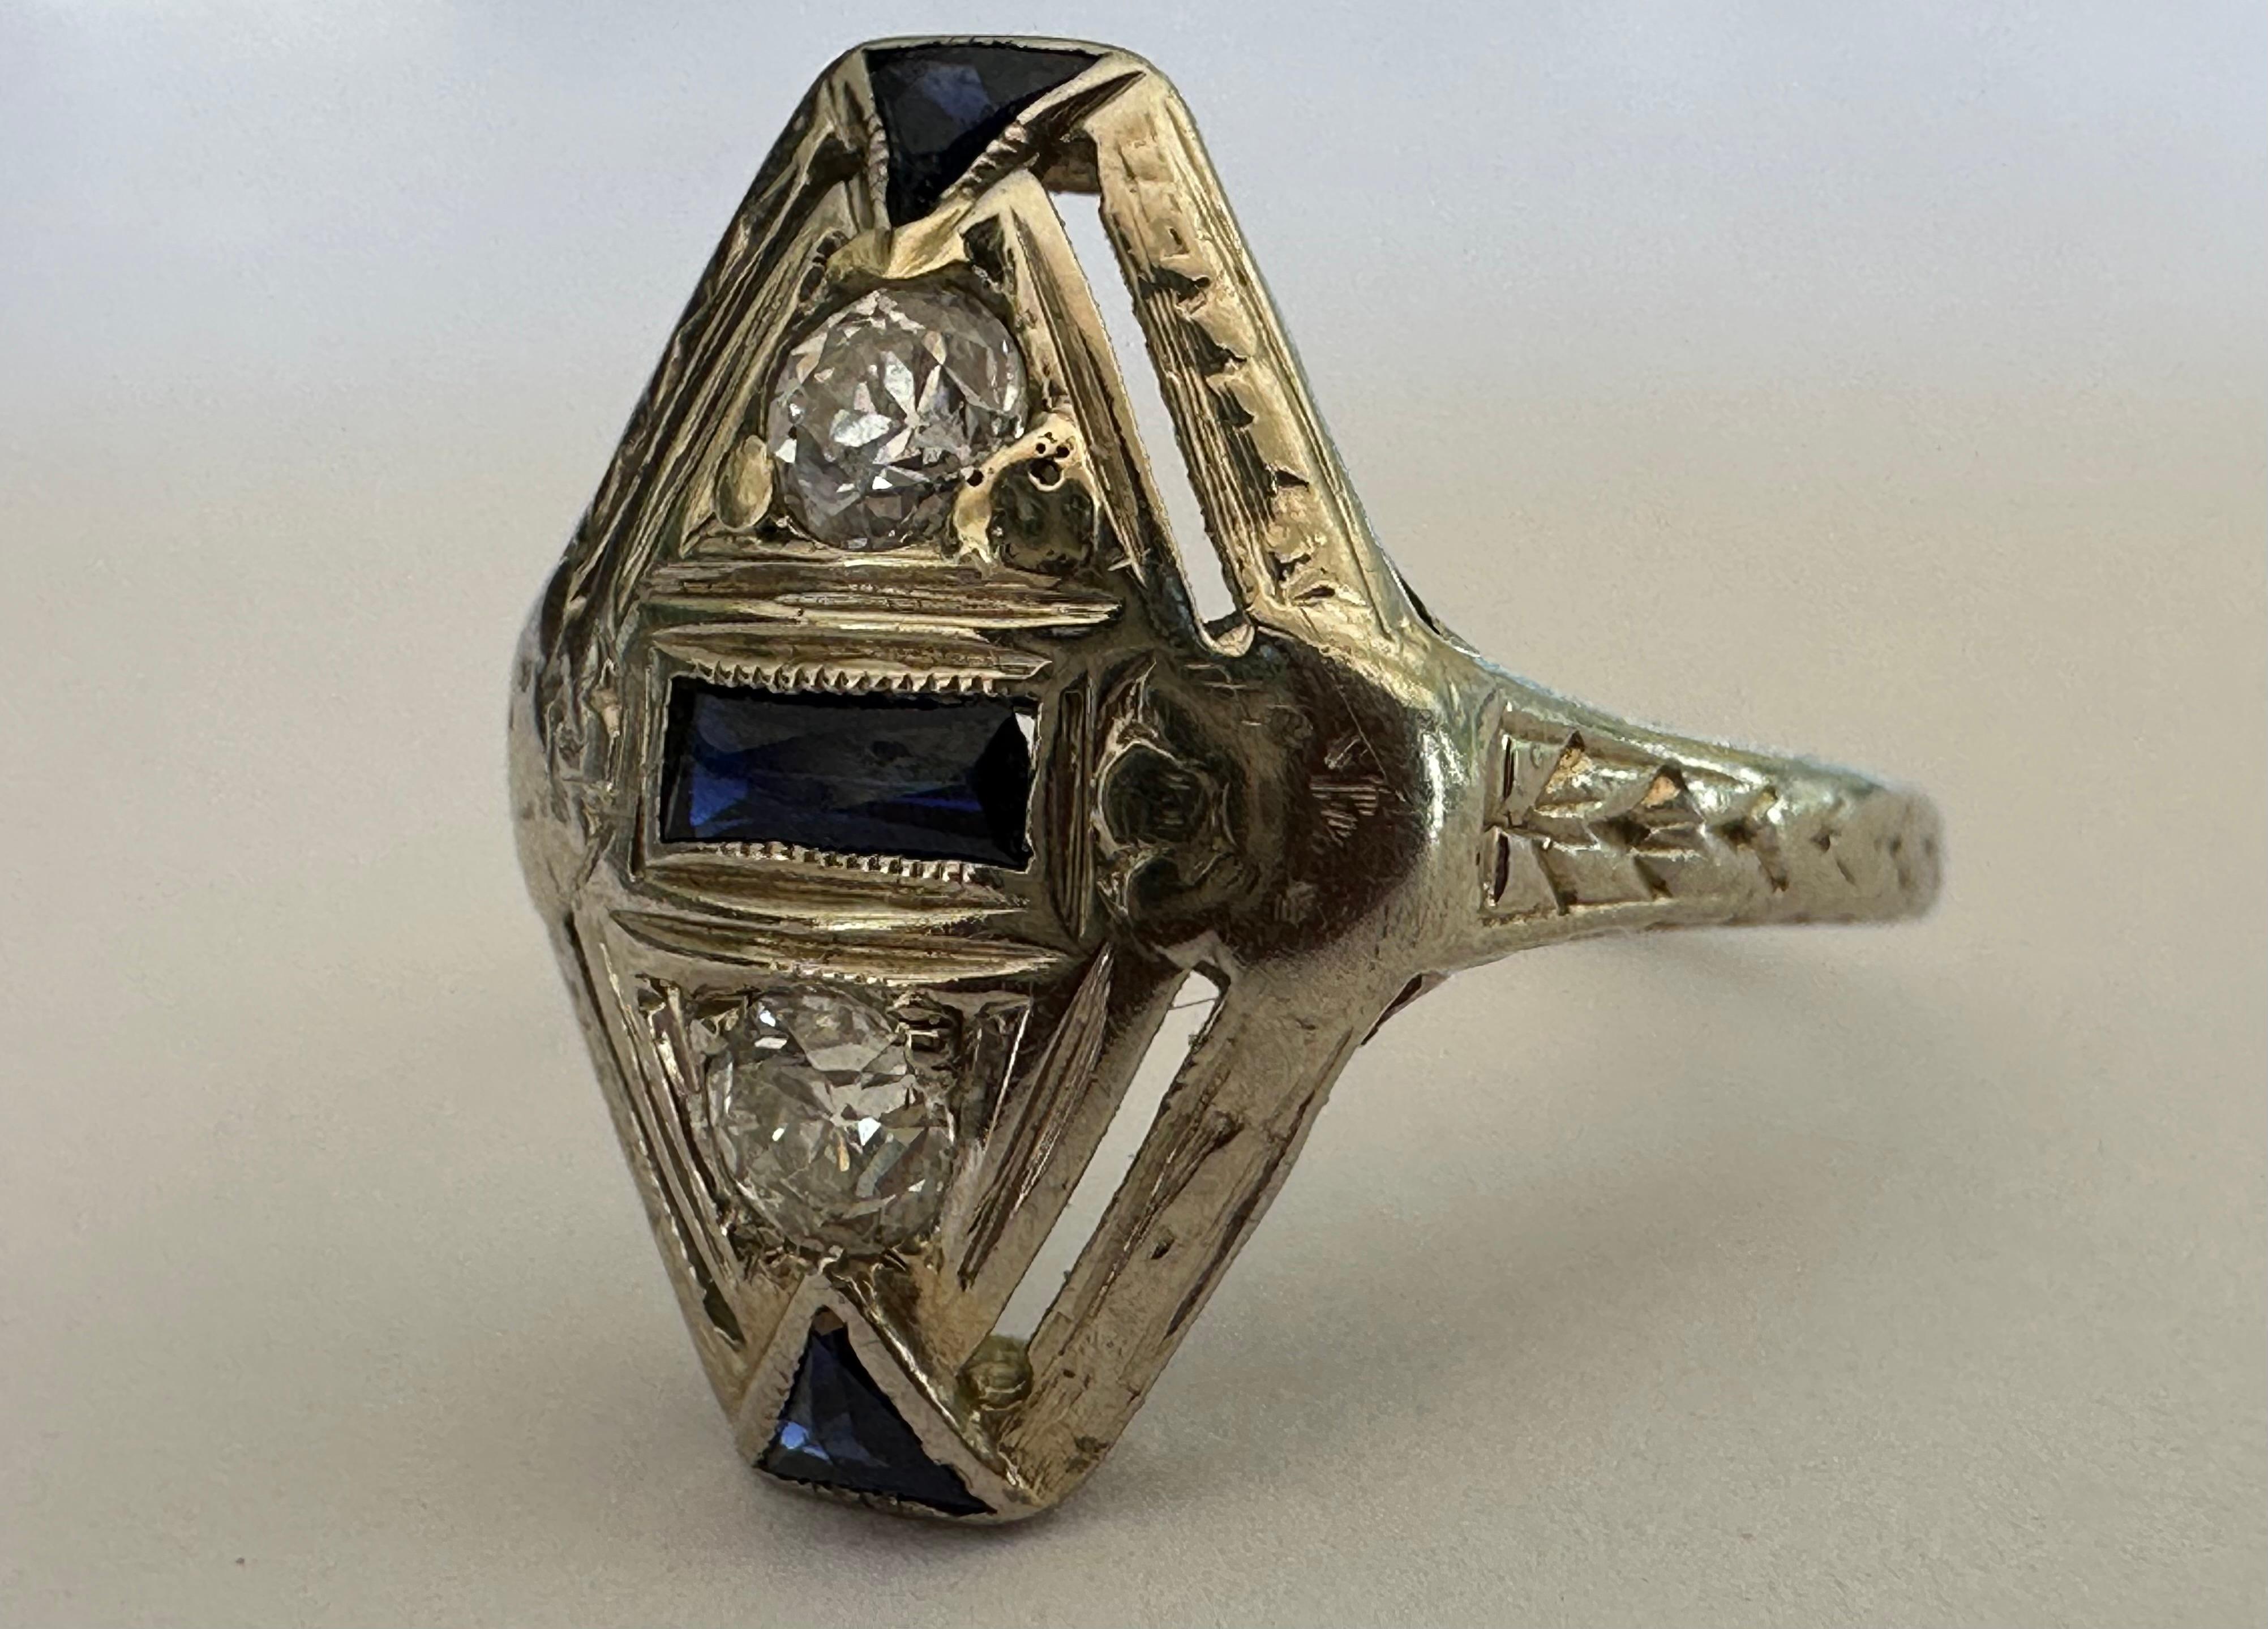 Zwei Diamanten im alteuropäischen Schliff mit einem Gesamtgewicht von ca. 0,16 Karat, Farbe HI, Reinheit VS, glänzen in diesem navettenförmigen Ring für den kleinen Finger, der durch tiefblaue Saphir-Akzente und dekorative Durchbrüche und